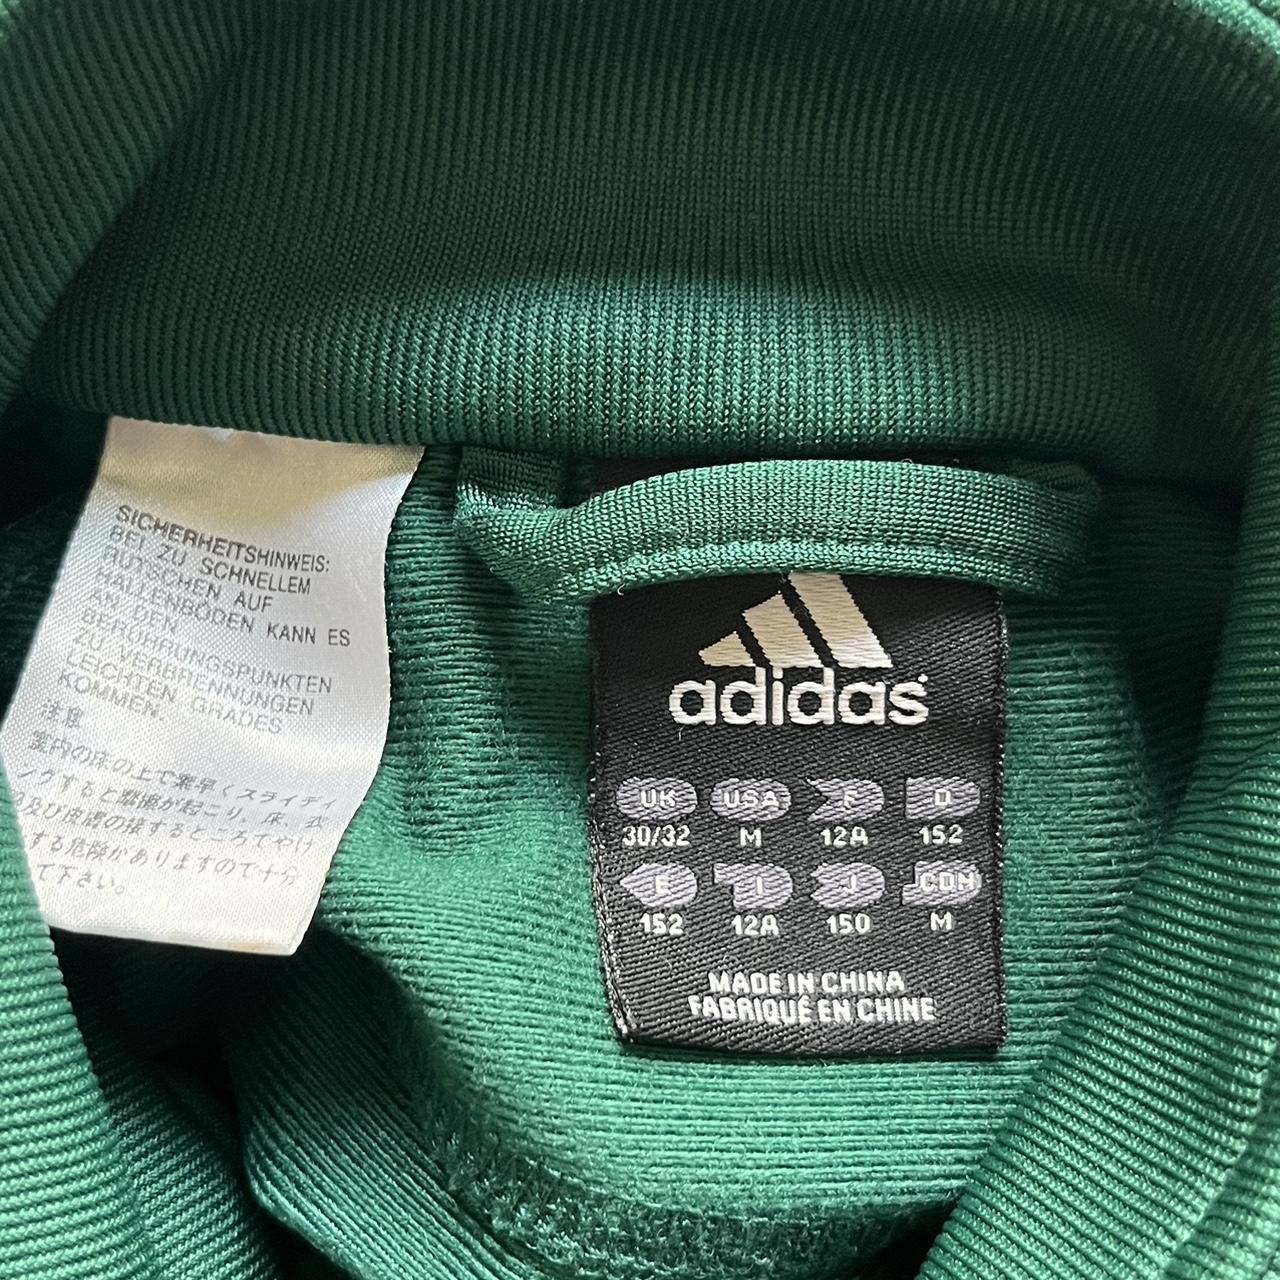 Adidas zip up track jacket size medium ★ (I would... - Depop